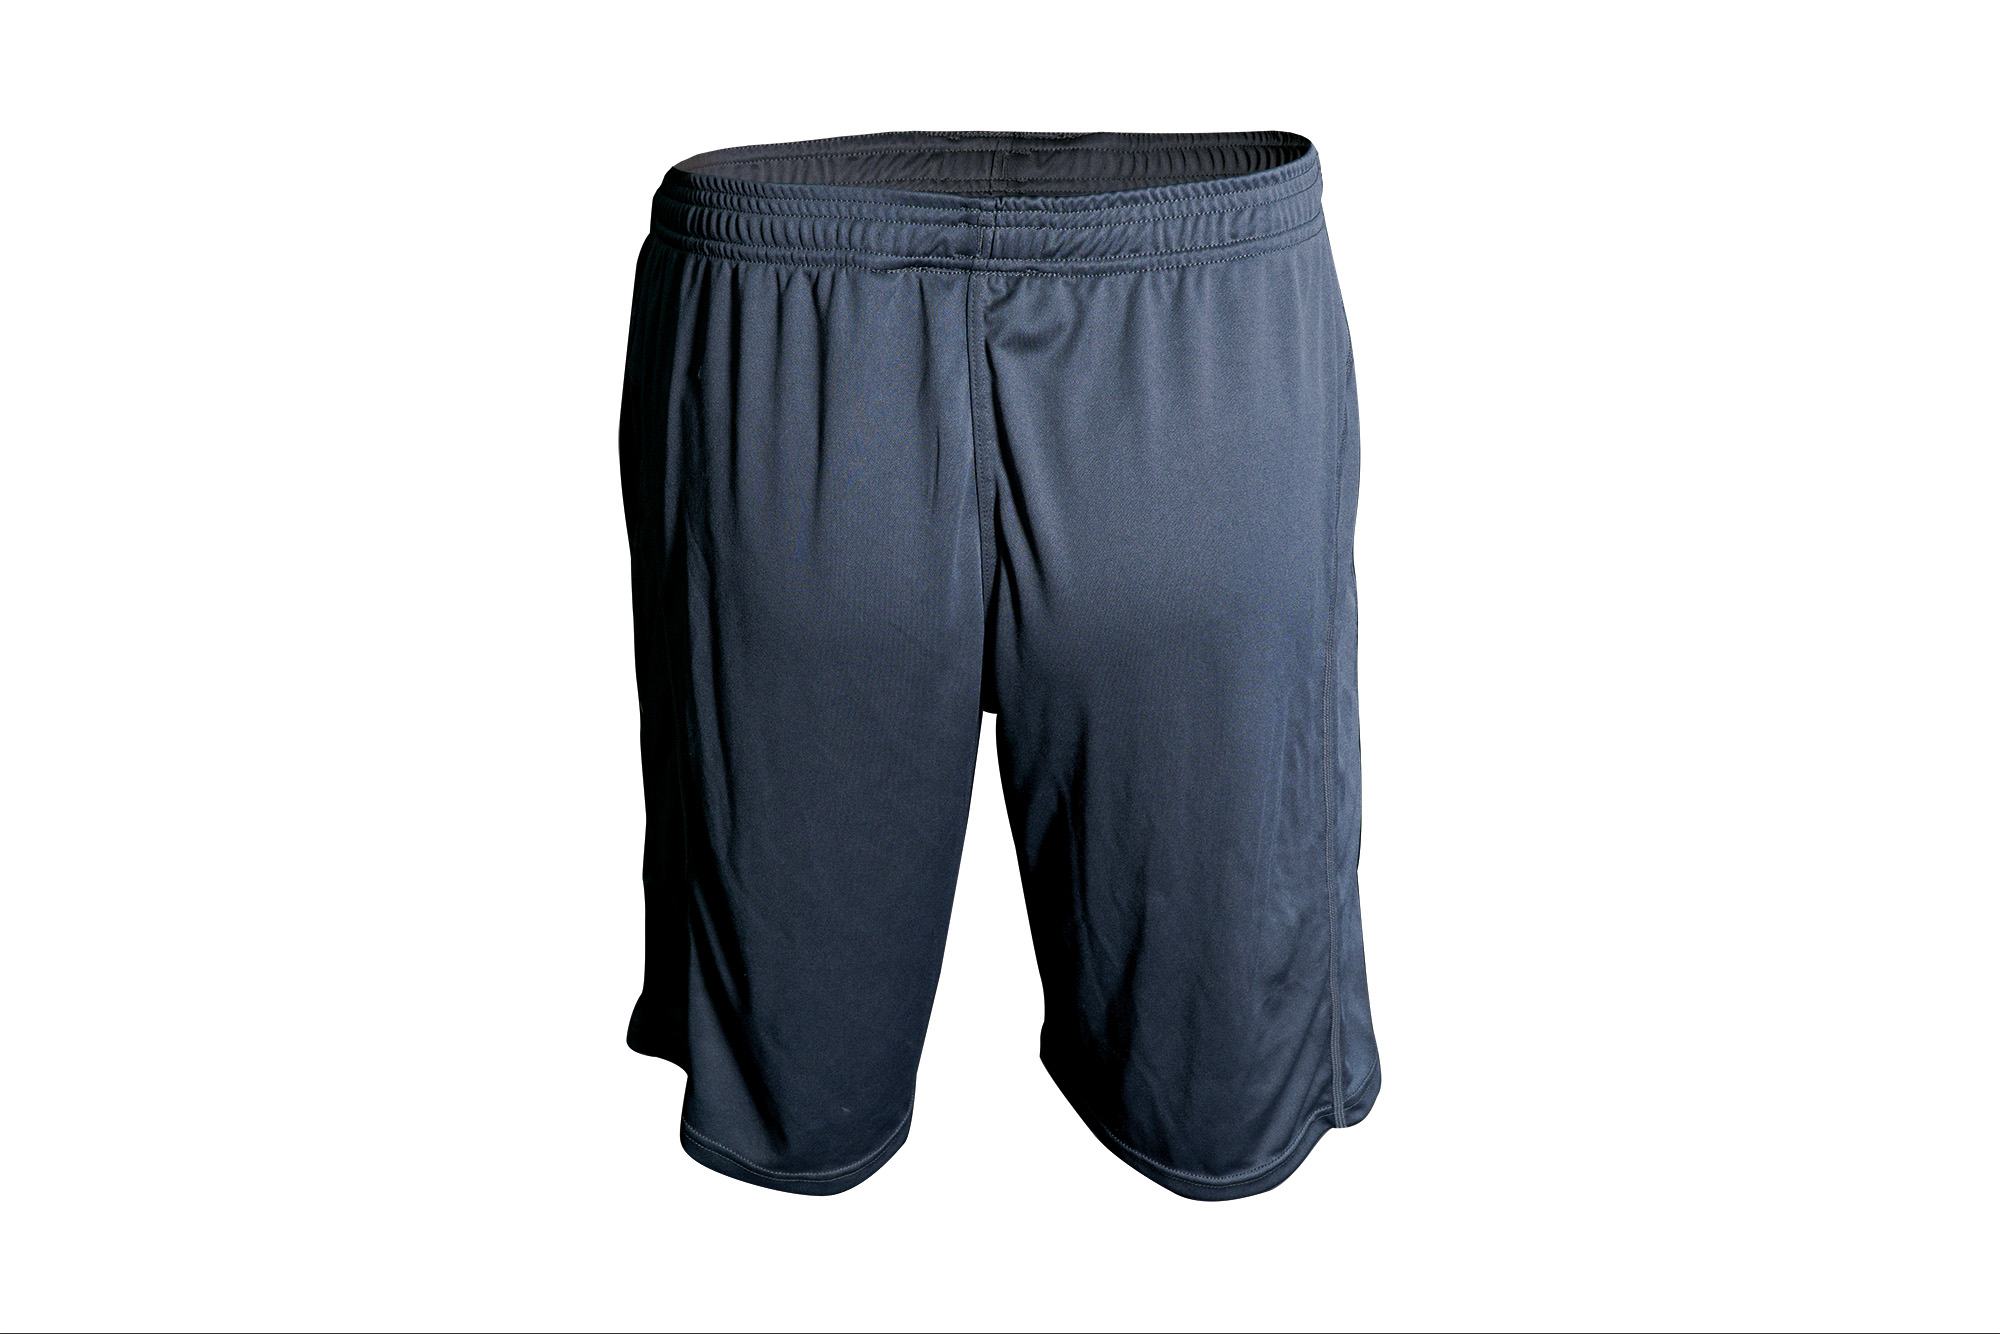 RidgeMonkey APEarel CoolTech Shorts Grey Pantalón